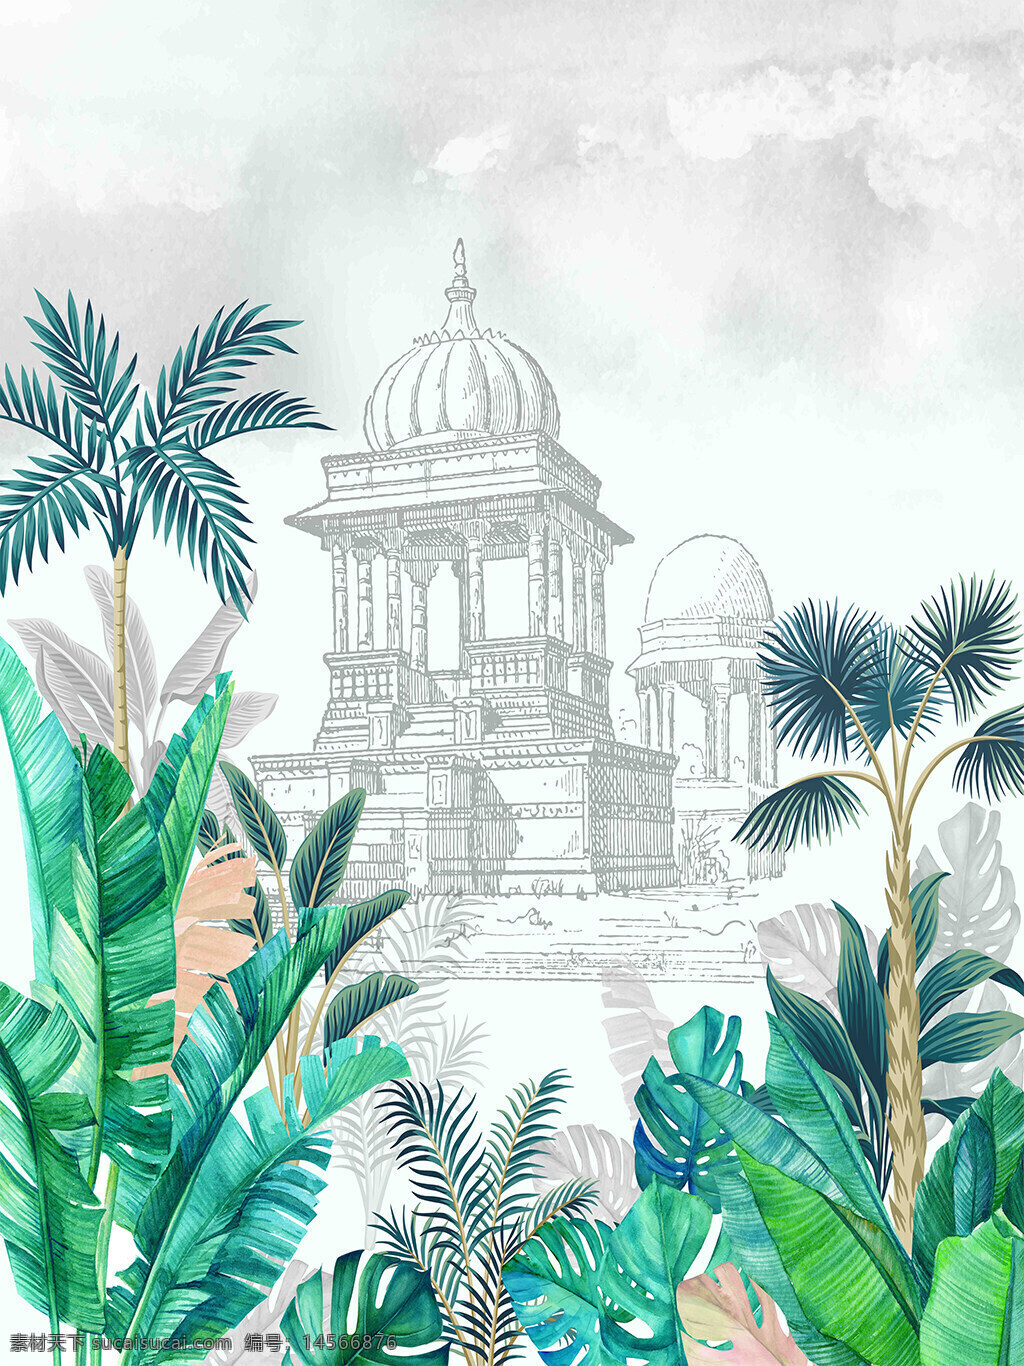 热带植物背景装饰 热带植物 背景 装饰 椰子树 龟背叶 线条建筑 水彩